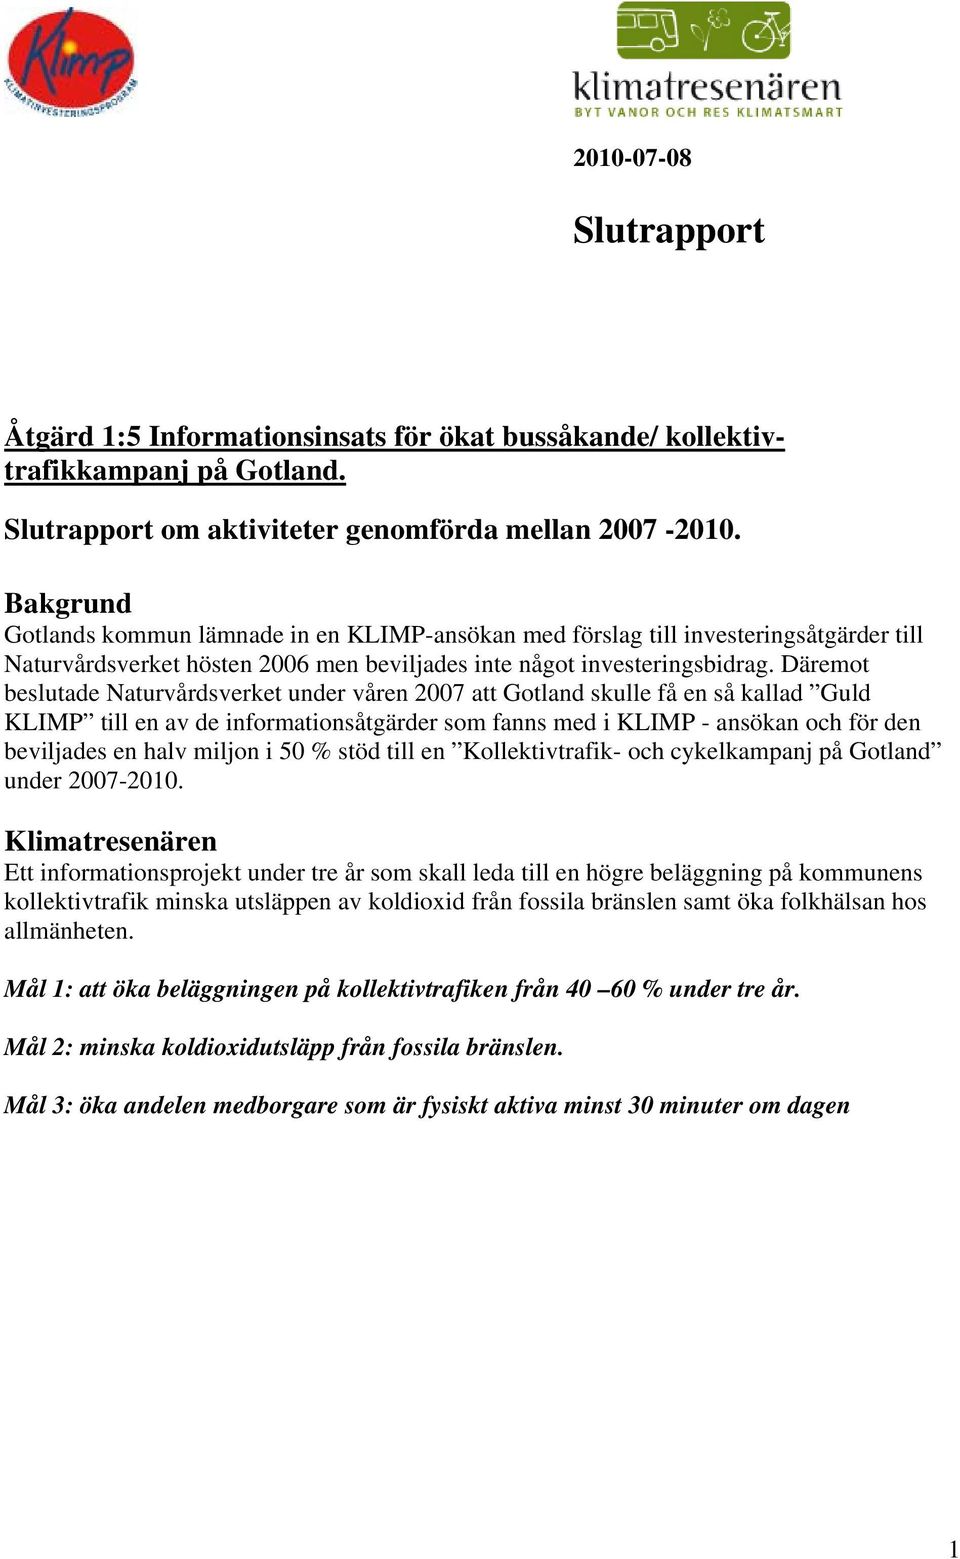 Däremot beslutade Naturvårdsverket under våren 2007 att Gotland skulle få en så kallad Guld KLIMP till en av de informationsåtgärder som fanns med i KLIMP - ansökan och för den beviljades en halv